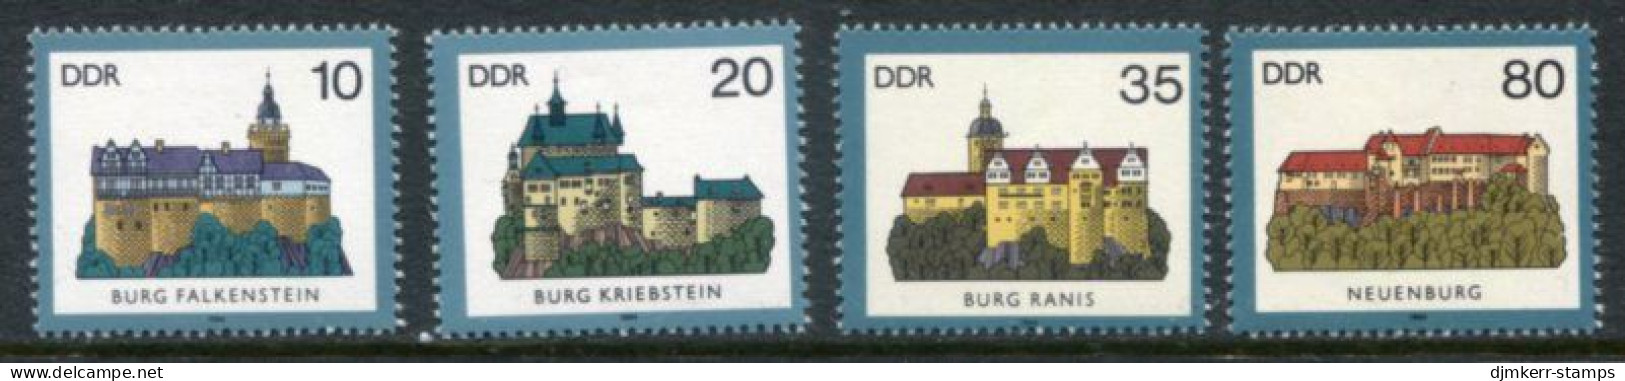 DDR 1984 Castles MNH / **.  Michel 2910-13 - Nuovi